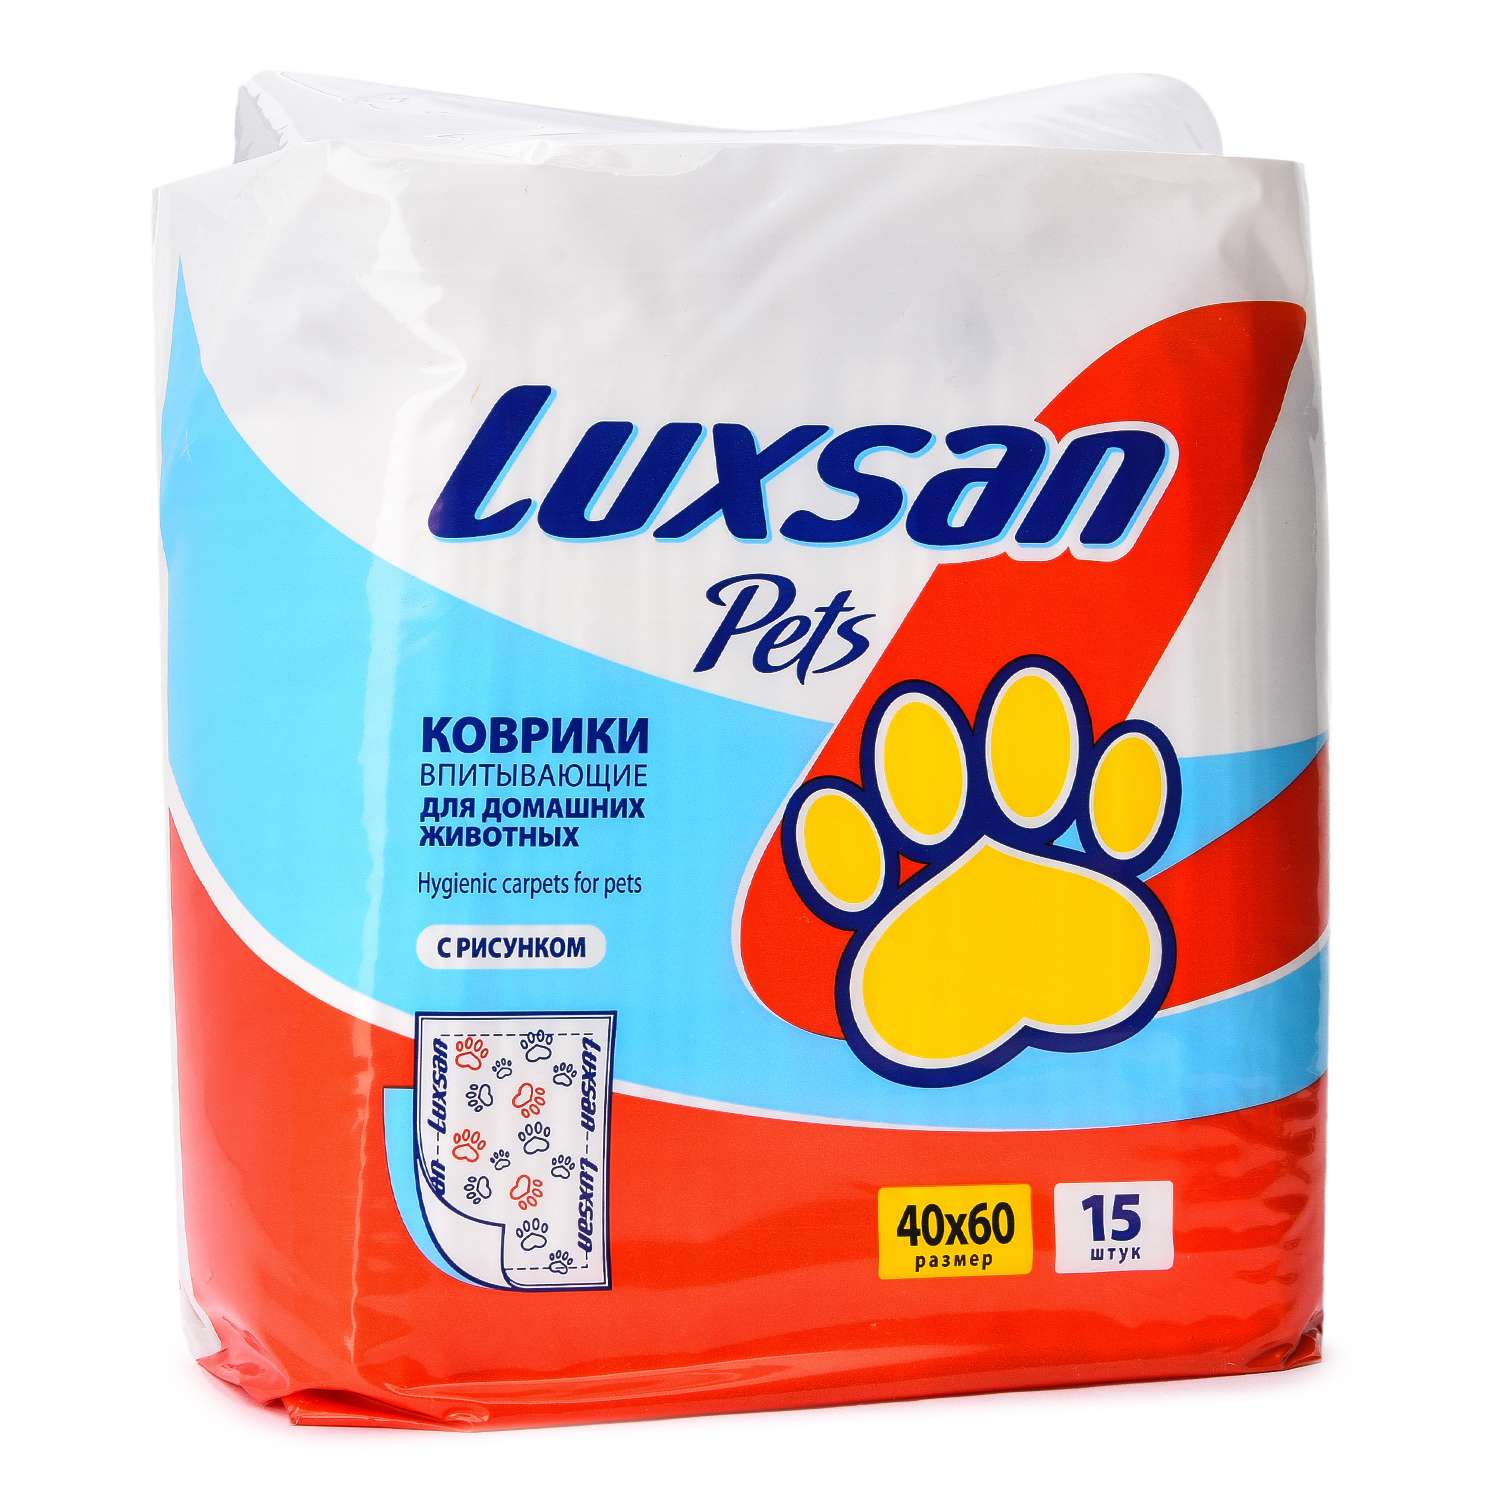 Коврики для животных Luxsan Pets впитывающие 40*60см 15шт - фото 1